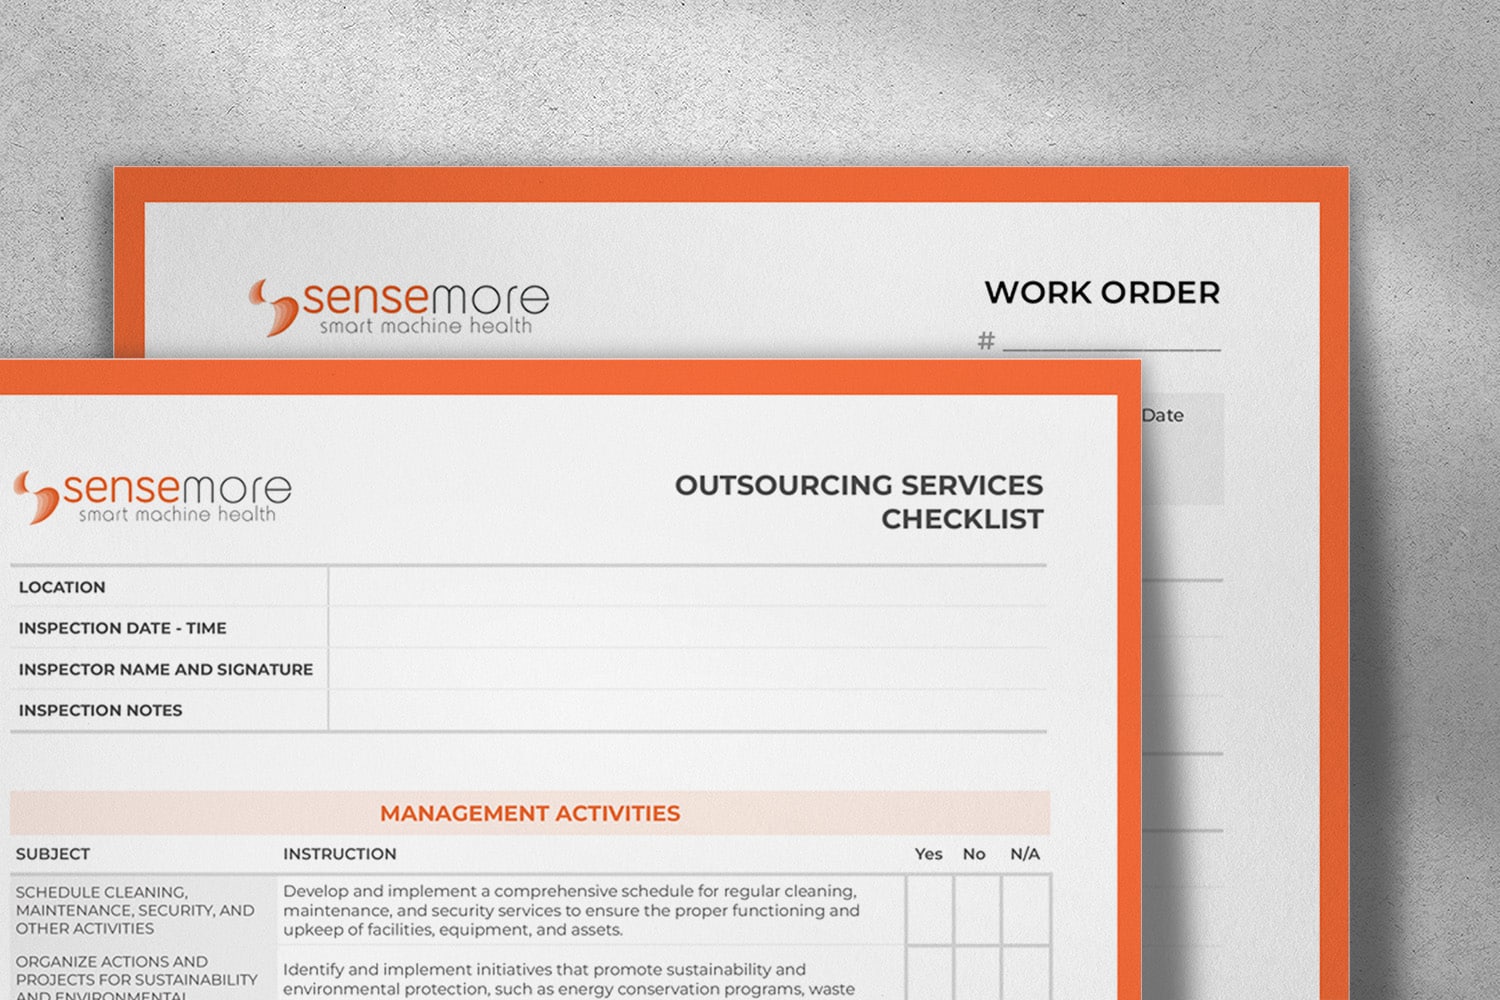 Sensemore Checklist Outsourcing Services